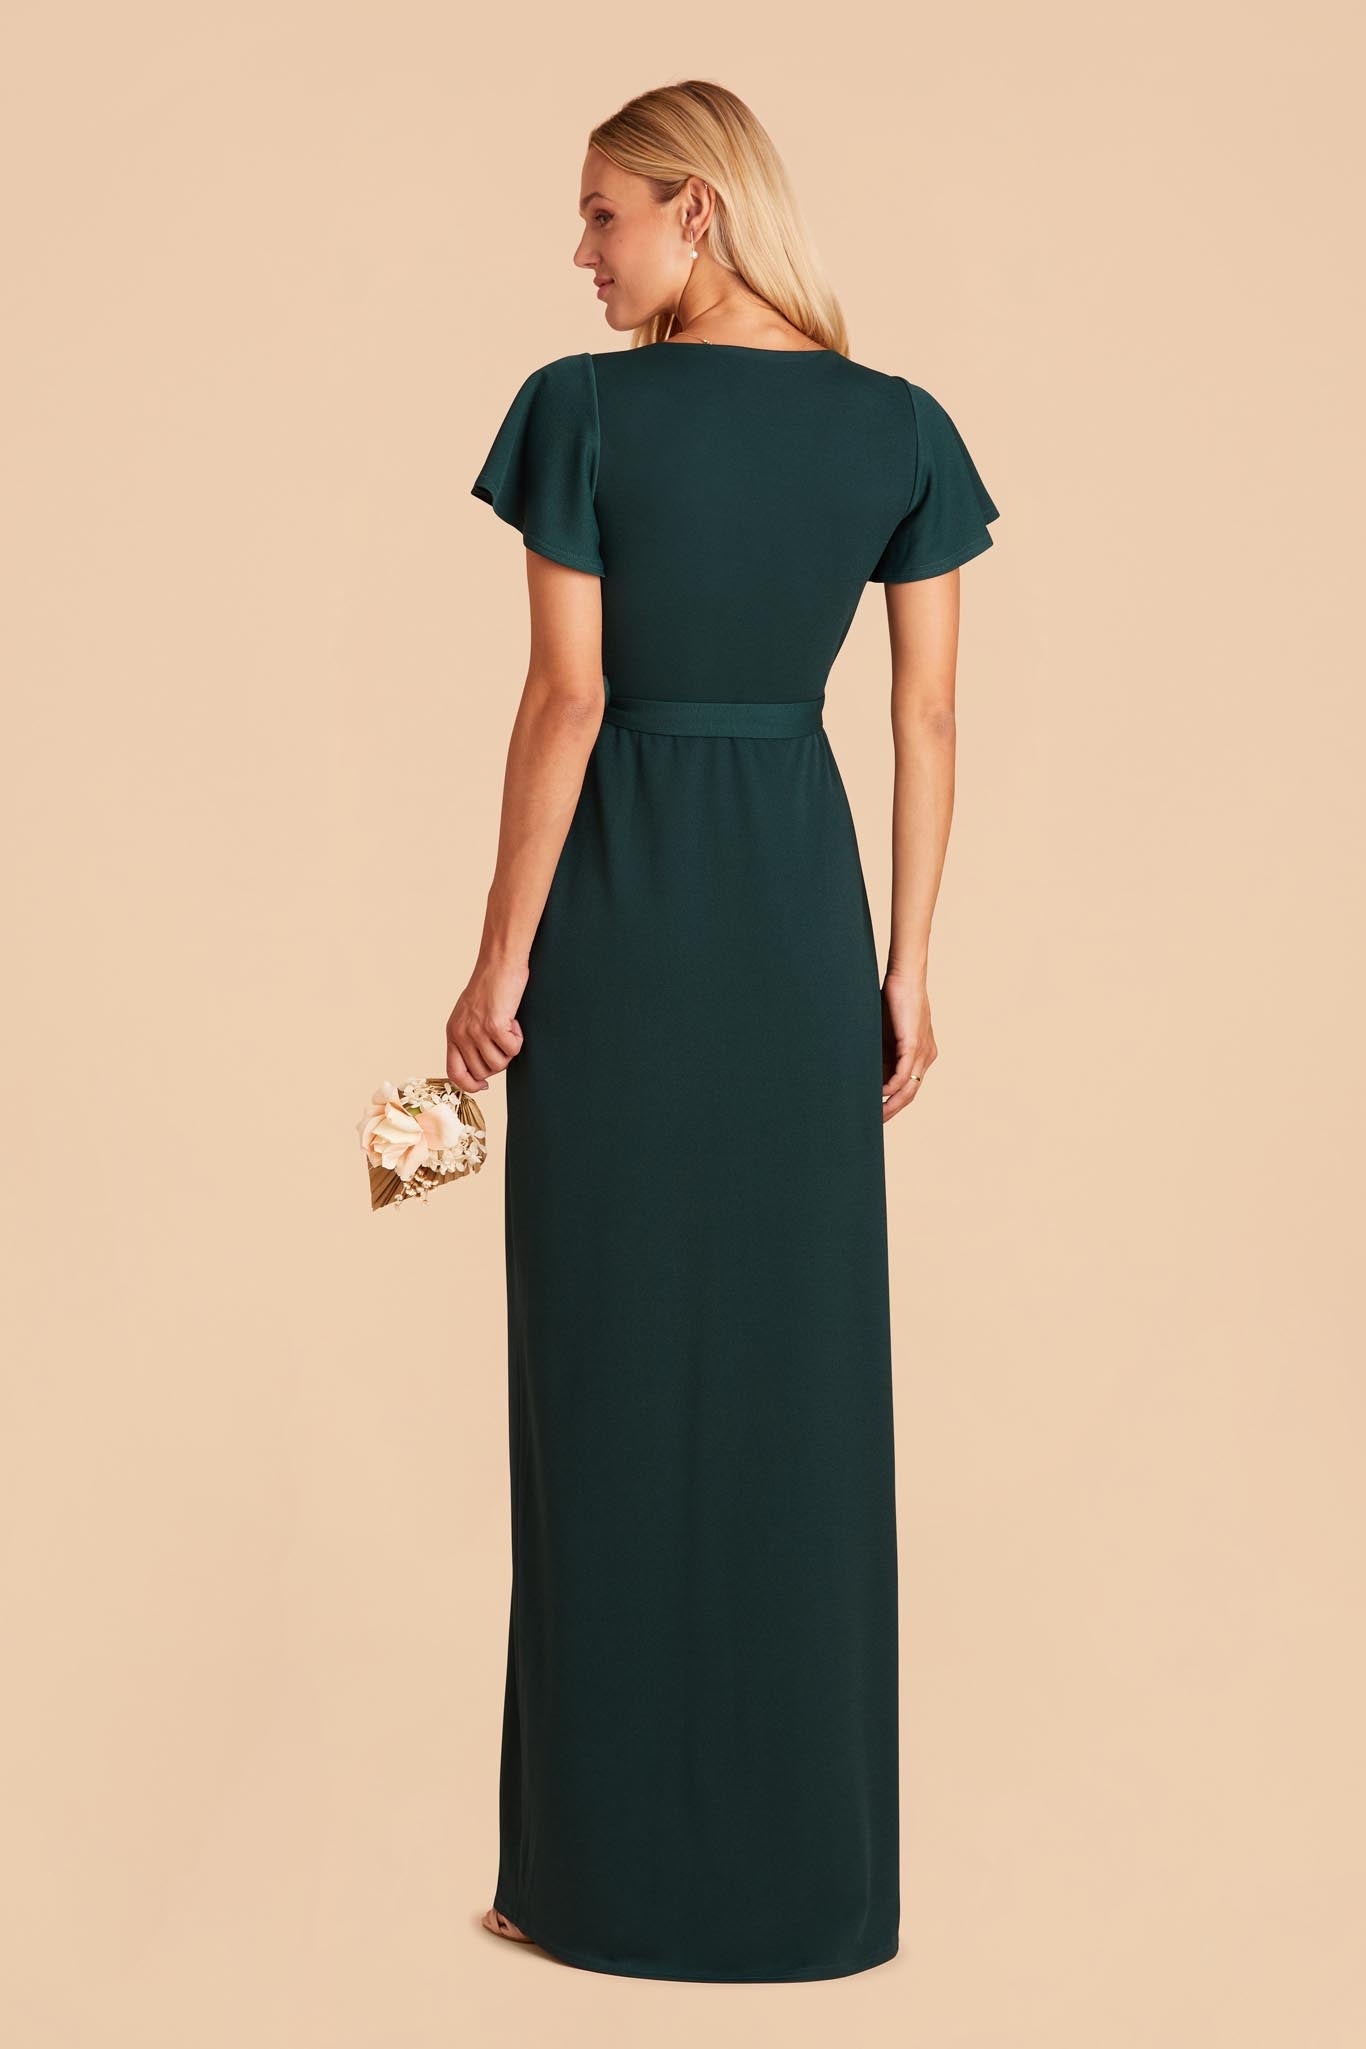 Emerald Yolanda Crepe Dress by Birdy Grey